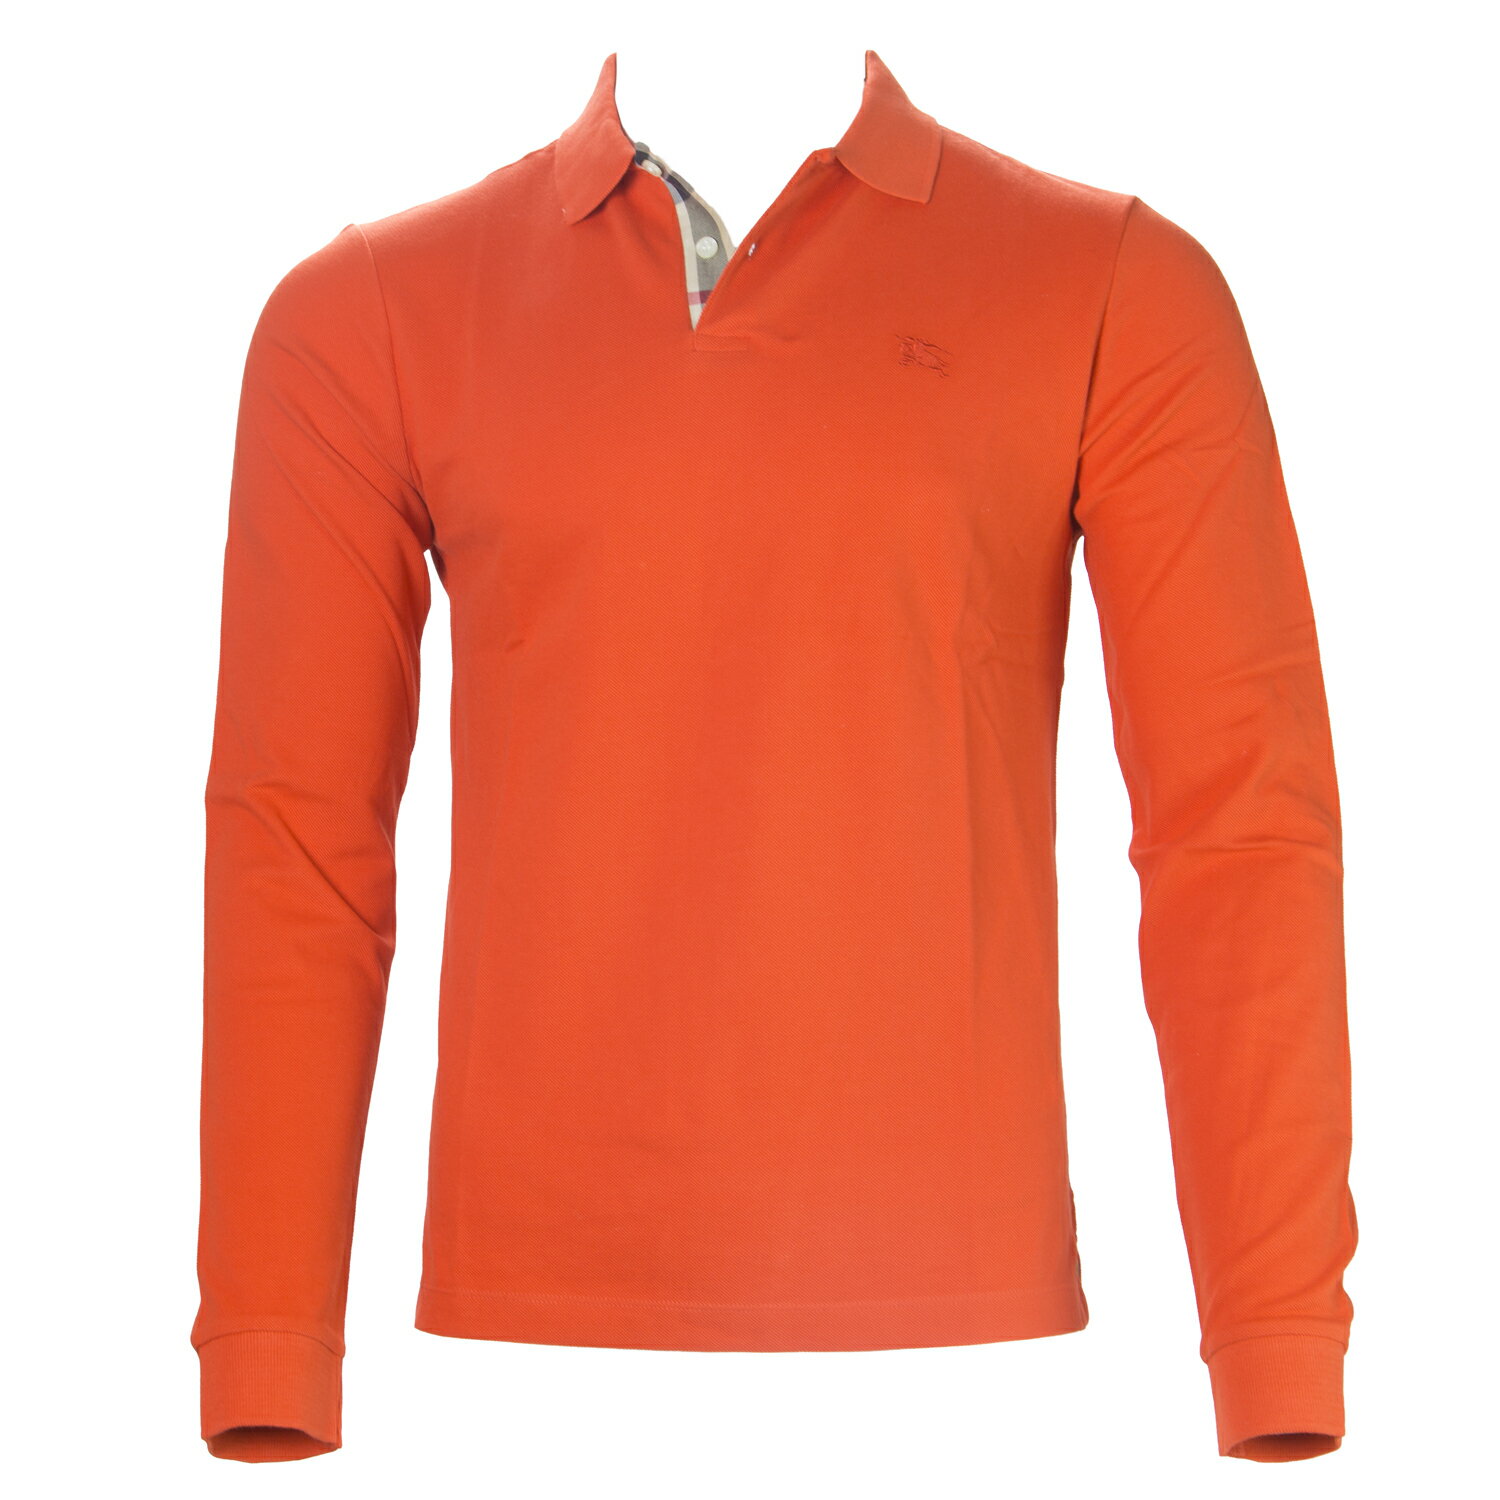 burberry polo shirt mens orange